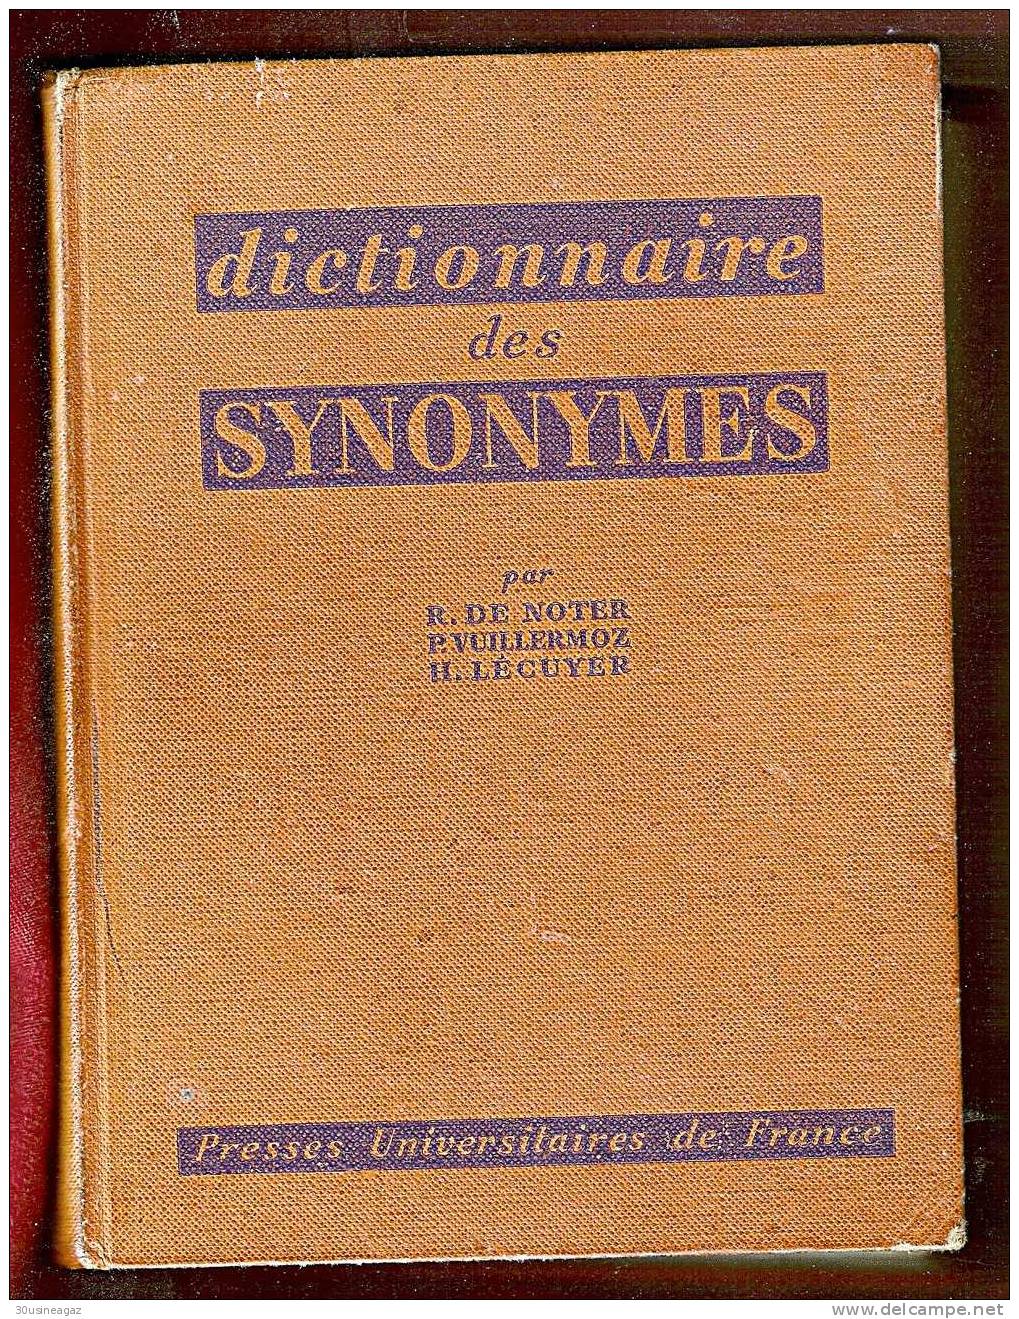 Dictionnaire Des Synonymes. R. De Noter,P. Vuillermoz, H.Lécuyer - Diccionarios